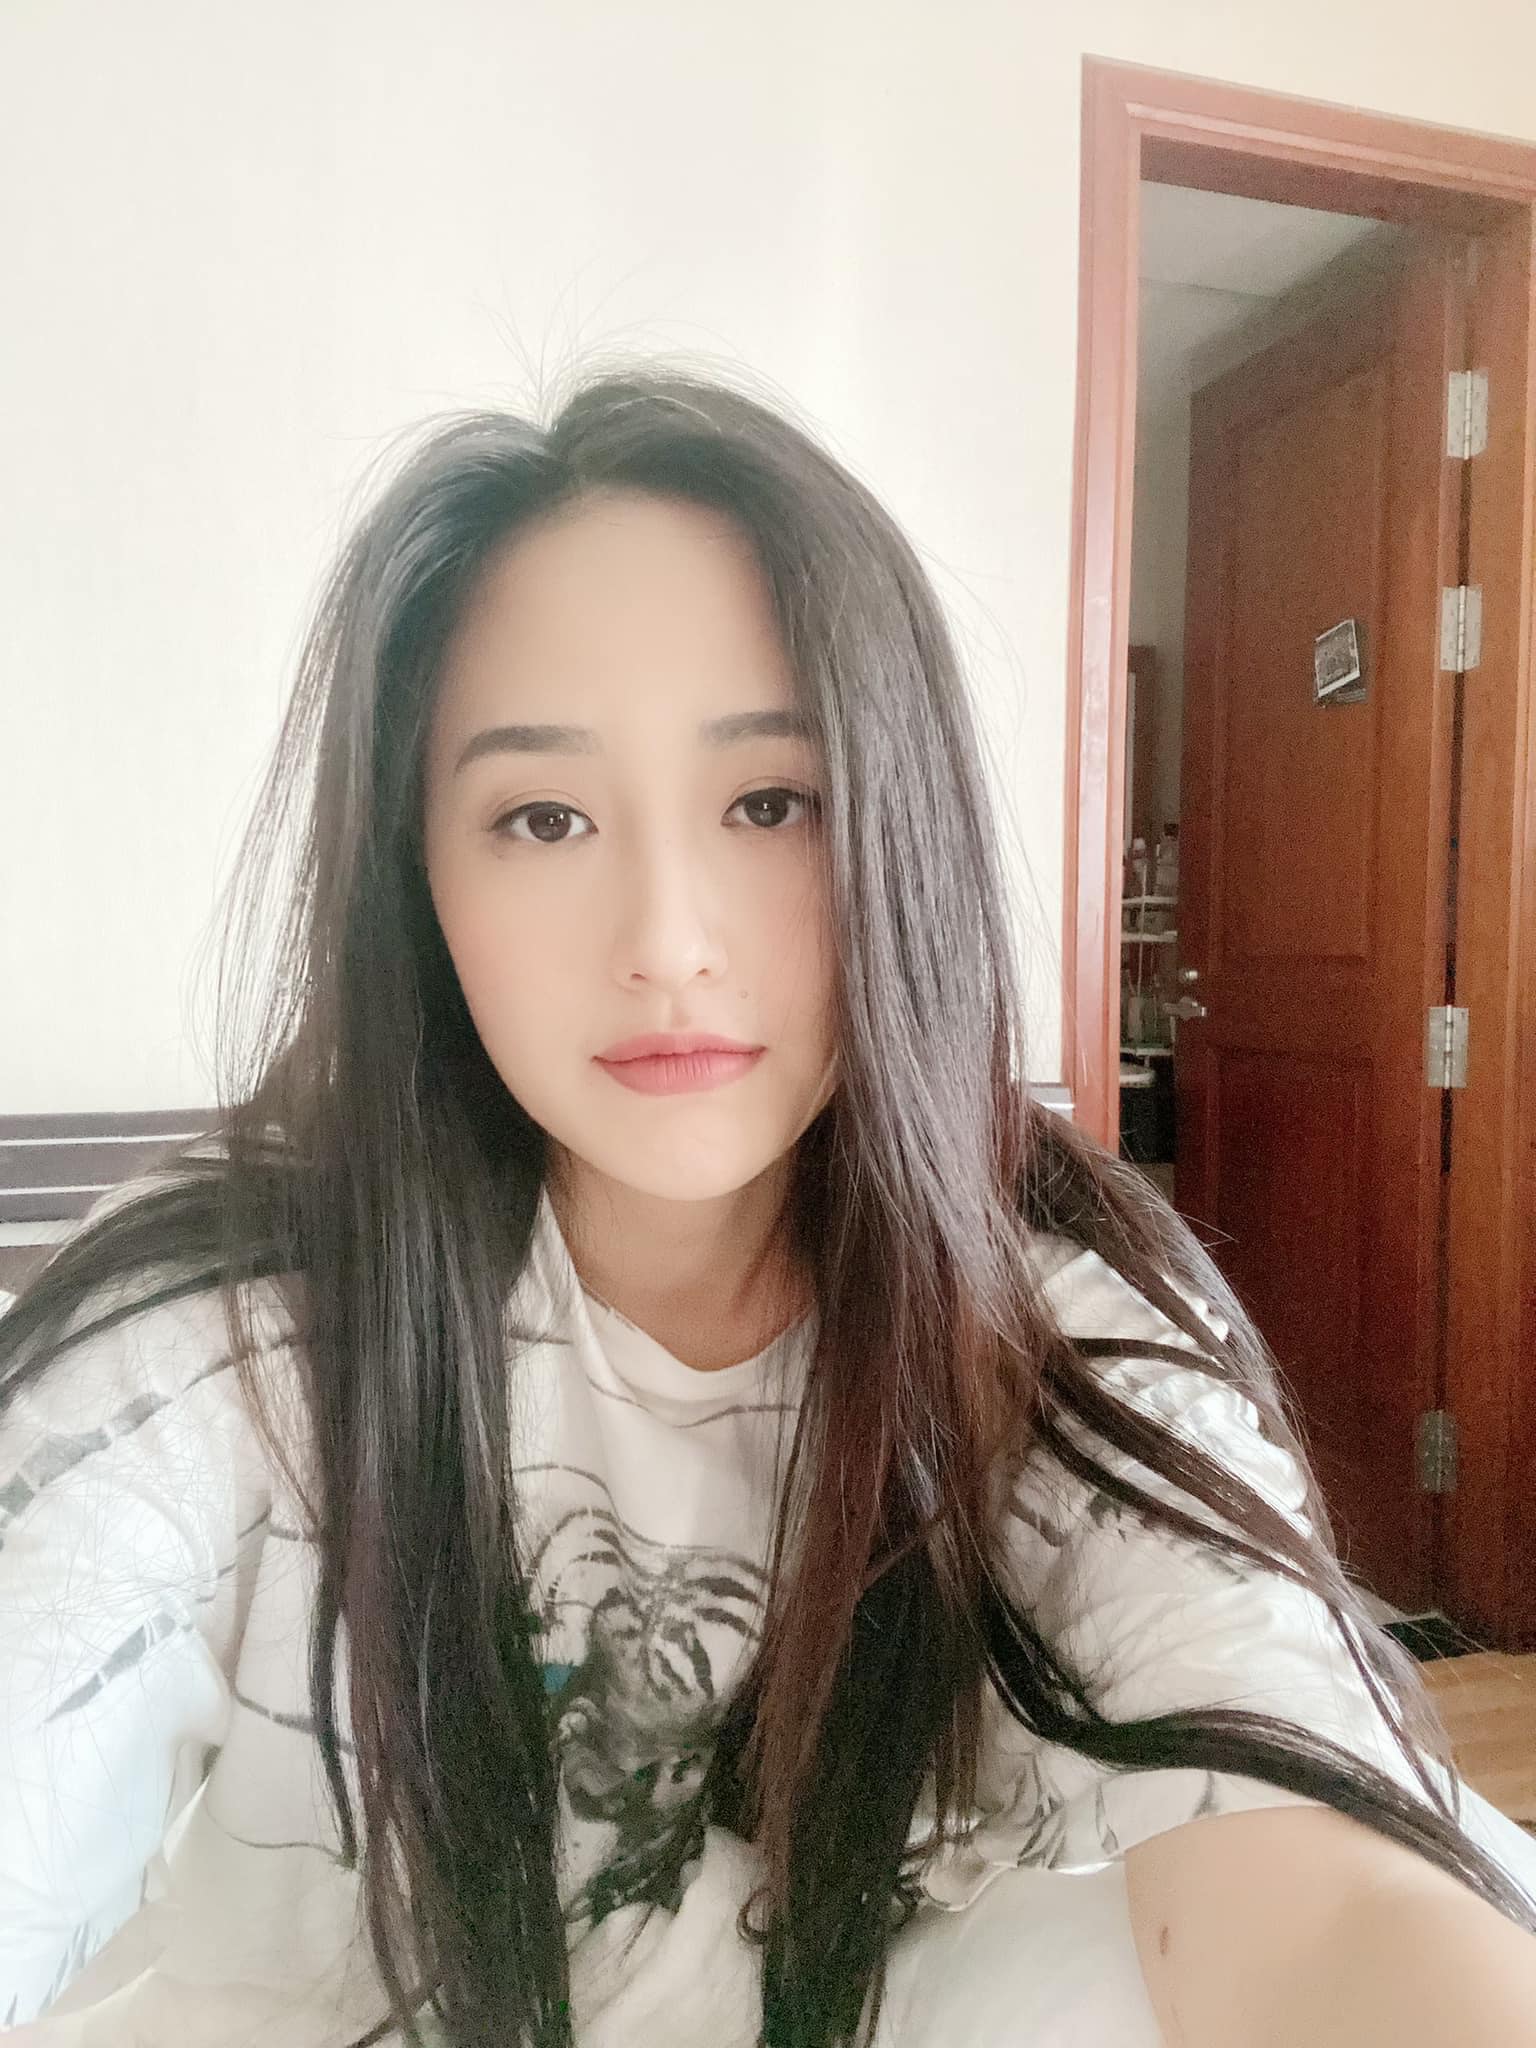 Hoa hậu Mai Phương Thúy selfie với nhan sắc mộc mạc khi ở nhà. Người đẹp tiết lộ cô lại gặp vấn đề về sức khỏe và nhận được sự nhắc nhở, động viên từ fan.